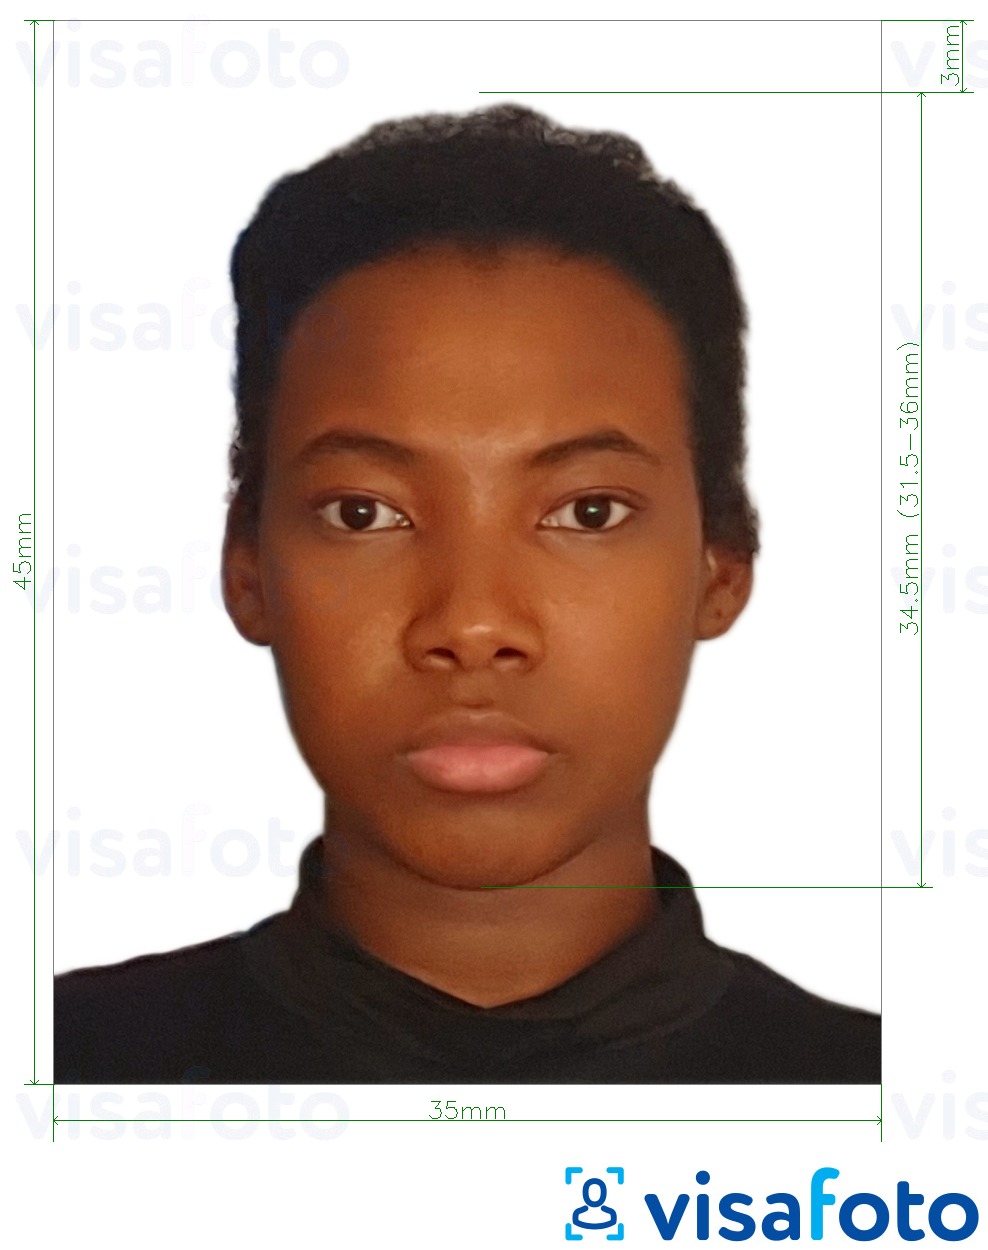 نمونه ی یک عکس برای پاسپورت لیبریا 35x45 میلی متر (3.5x4.5 سانتی متر) با مشخصات دقیق